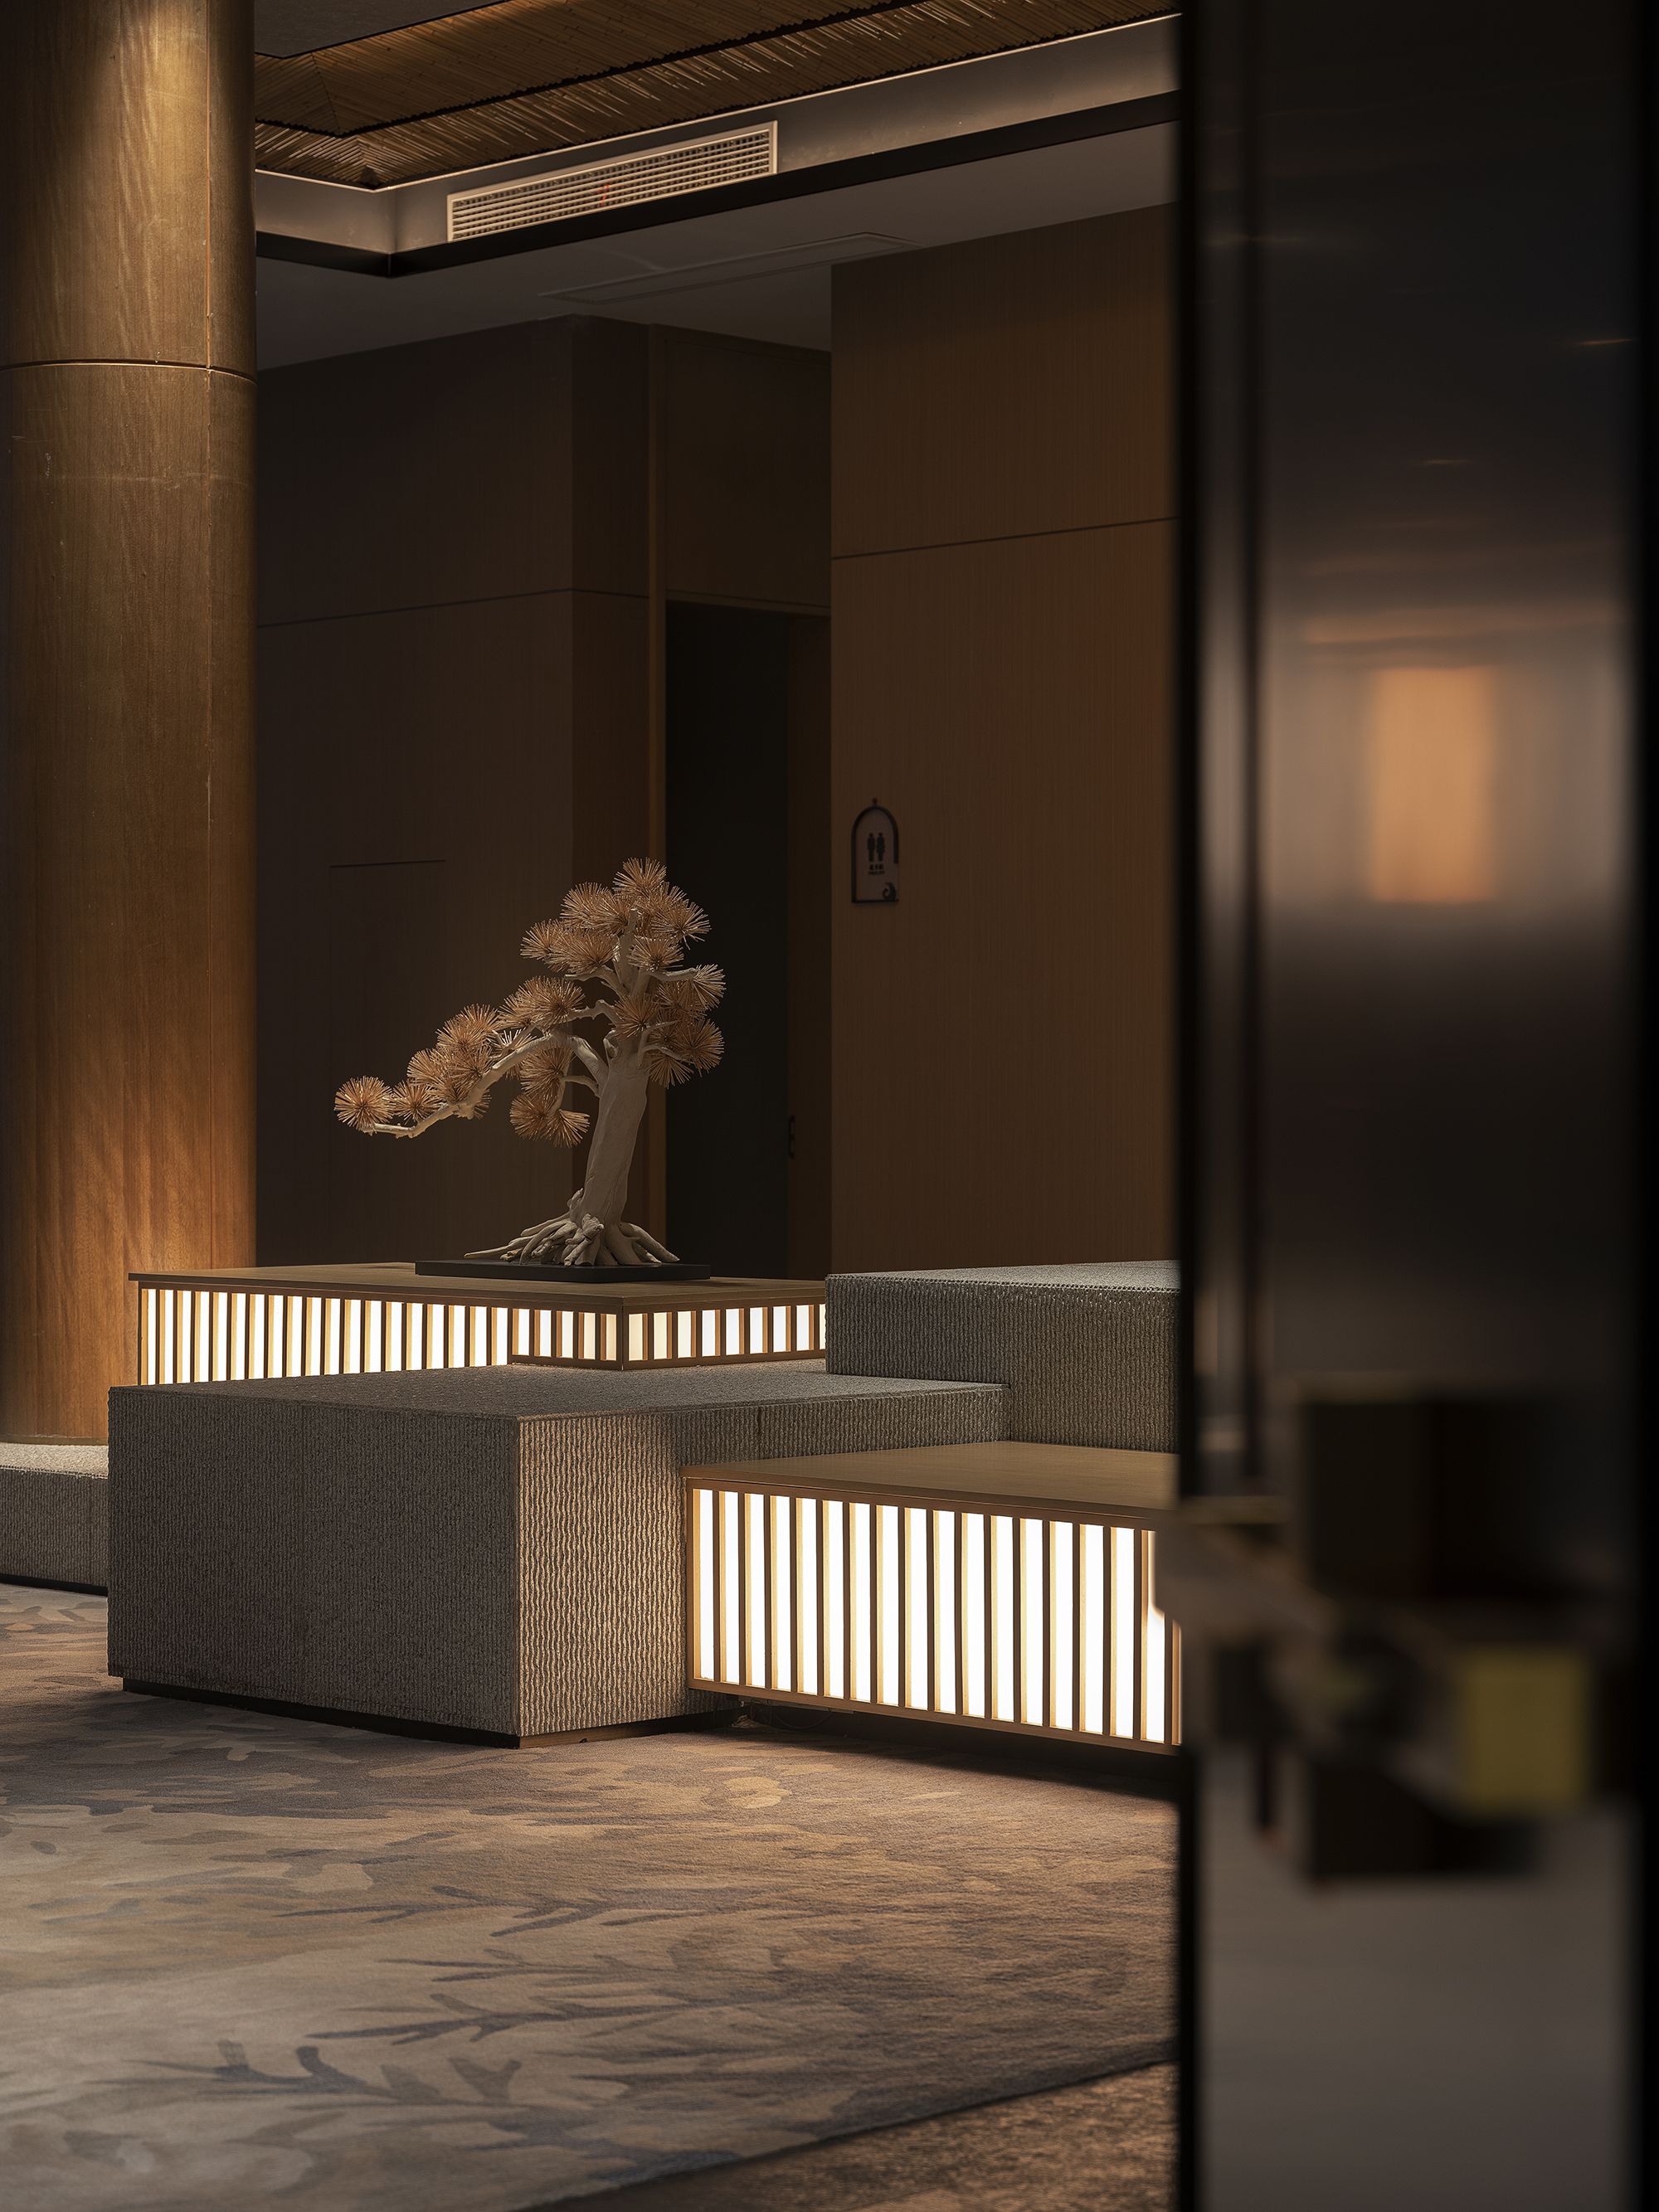 图片[3]|长兴大唐宫茶酒店|ART-Arrakis | 建筑室内设计的创新与灵感